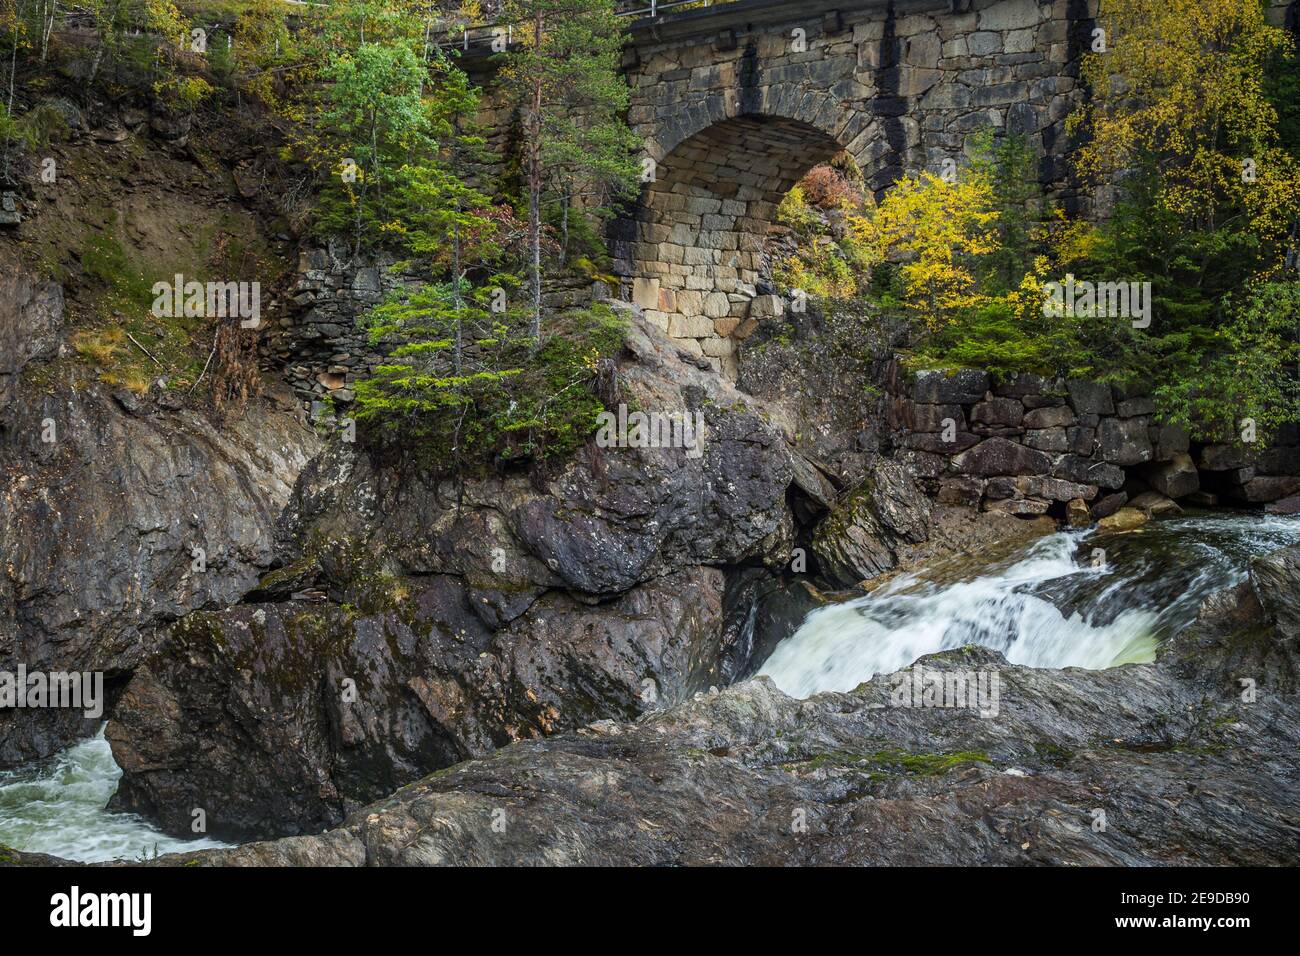 Paysage boisé de la rivière Gaula et du vieux pont Eidets Broa. Forêt de montagne scandinave et bois d'automne Banque D'Images